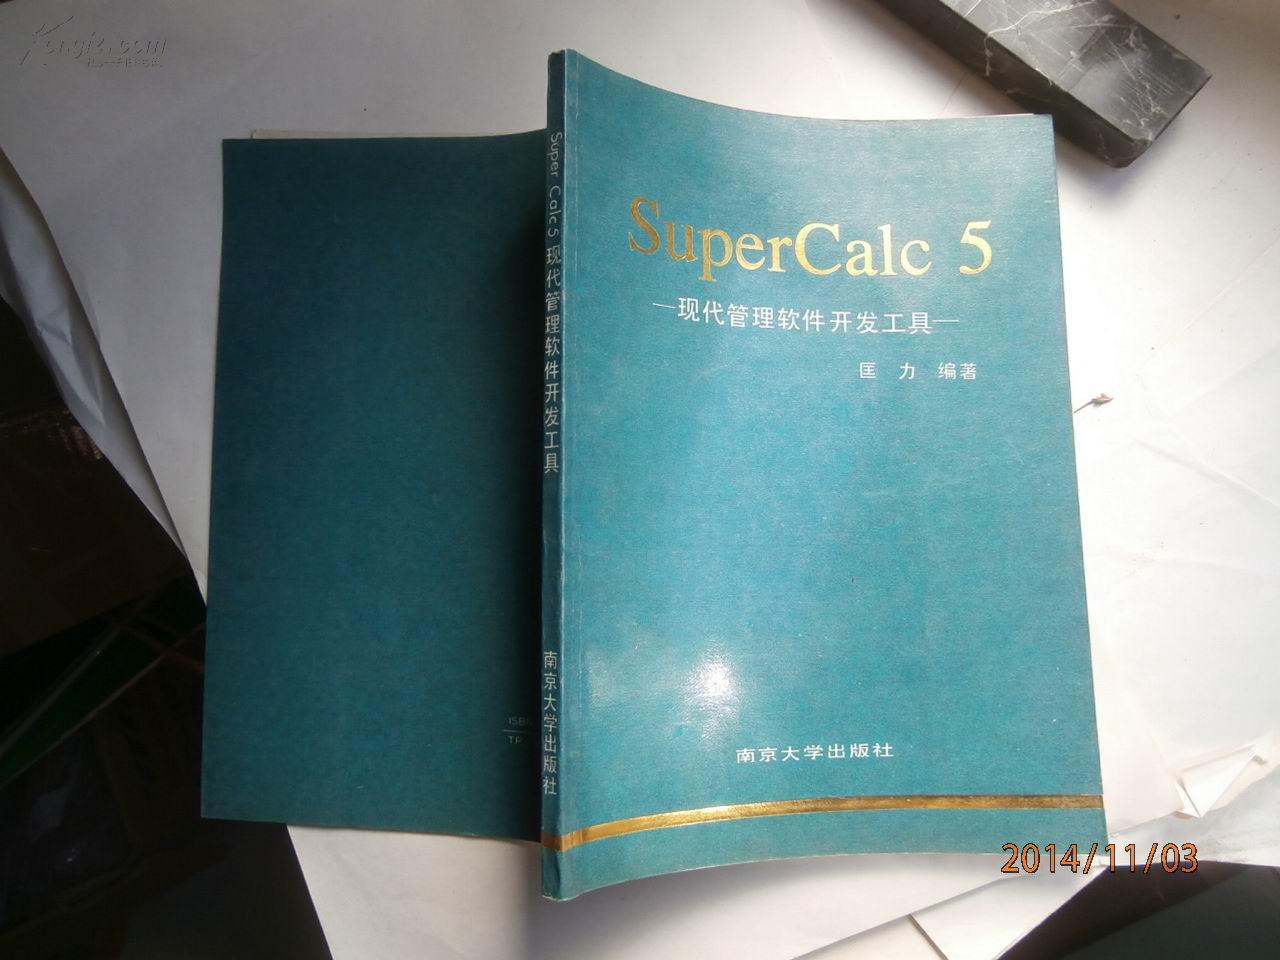 SuperCalc 5:现代管理软件开发工具